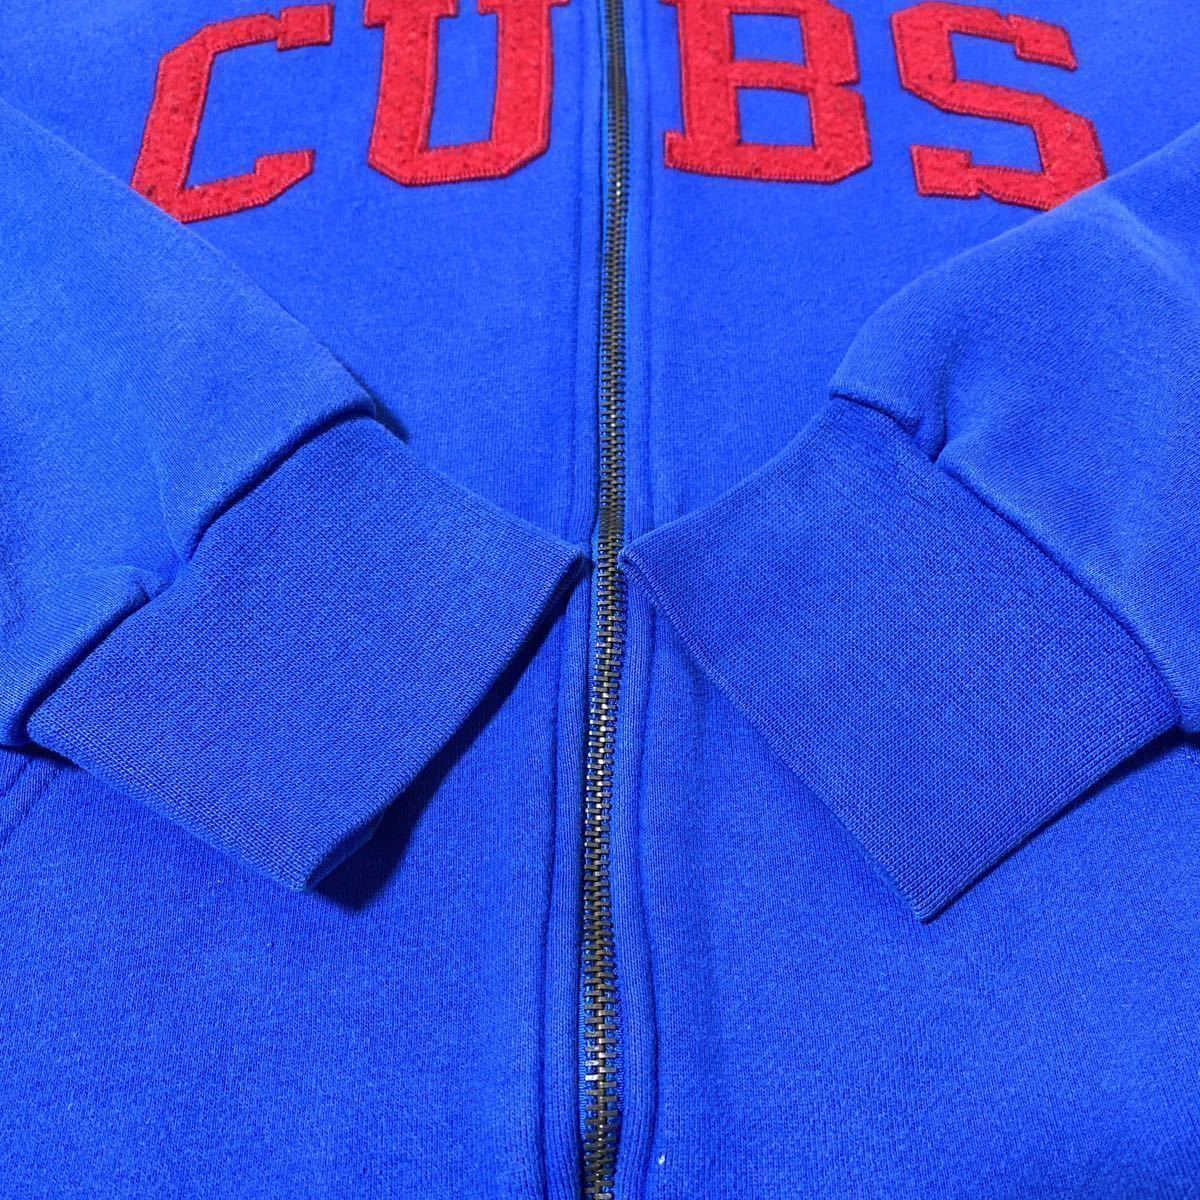 90s Majestic マジェスティック MLB Chicago Cubs シカゴ・カブス フルジップ スウェット パーカー L メジャーリーグ USA古着 アメリカ古着_画像6